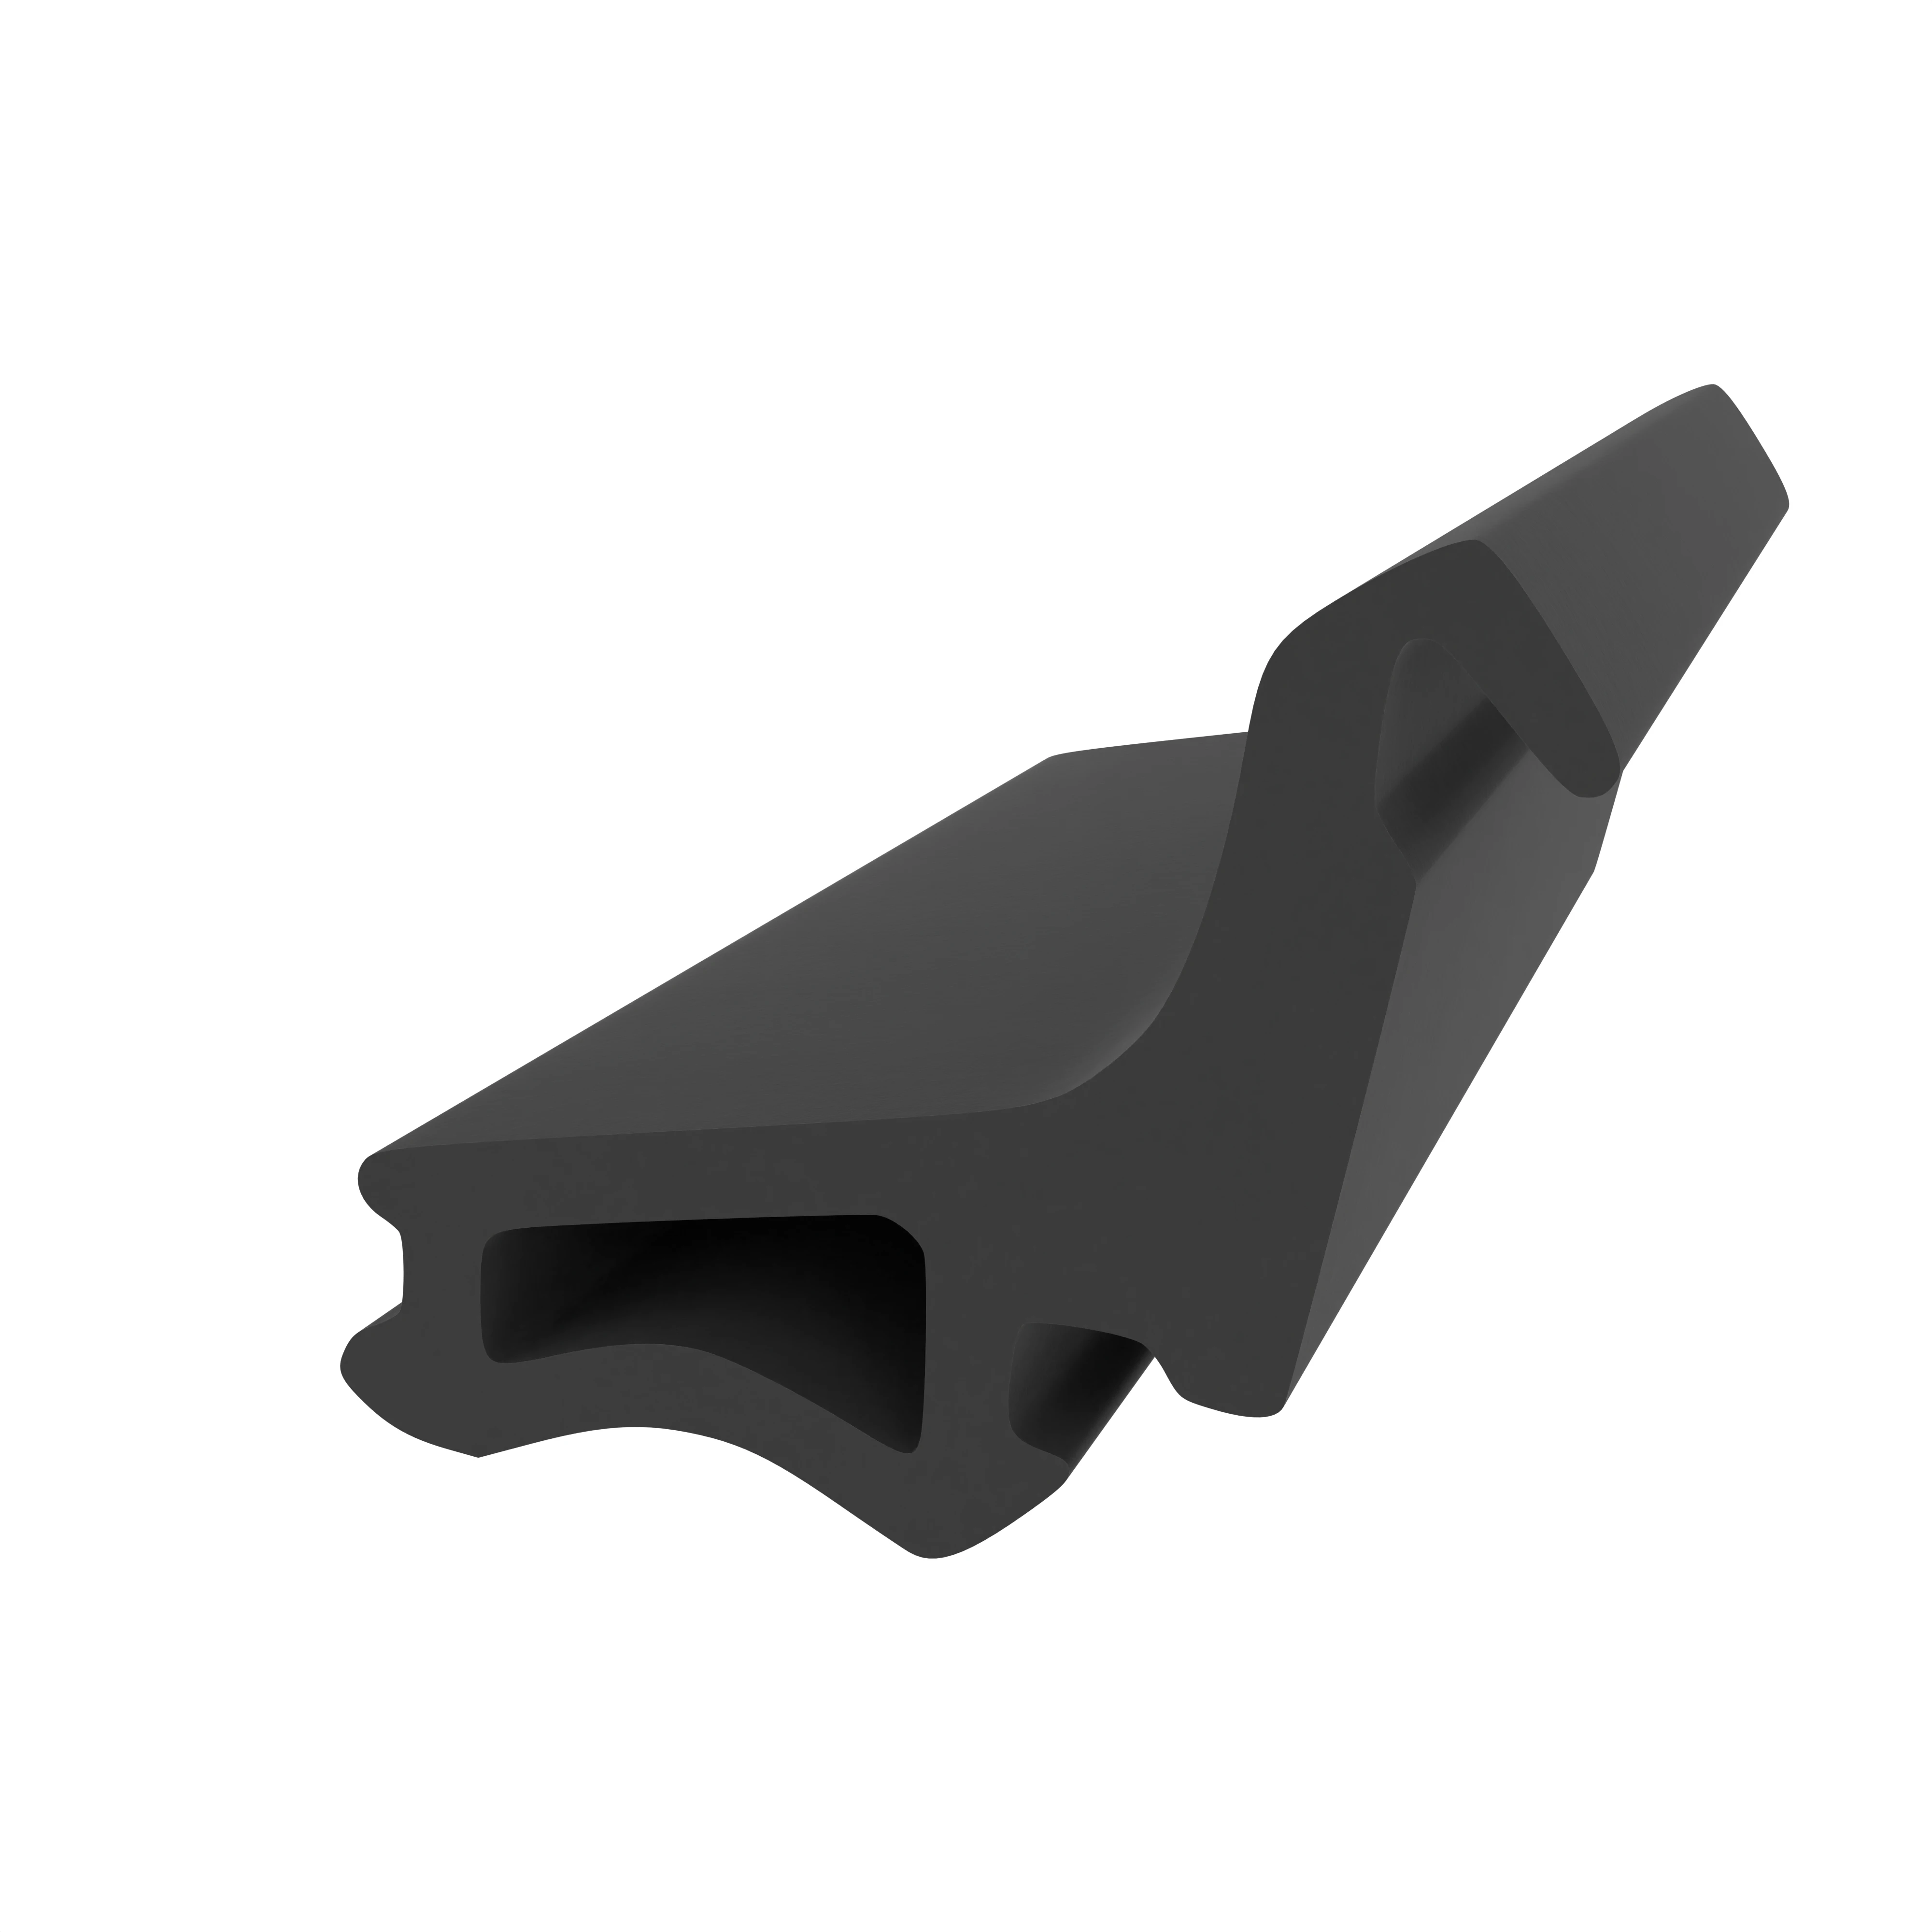 Mitteldichtung für Metall- und Alufenster | 18 mm Höhe | Farbe: schwarz